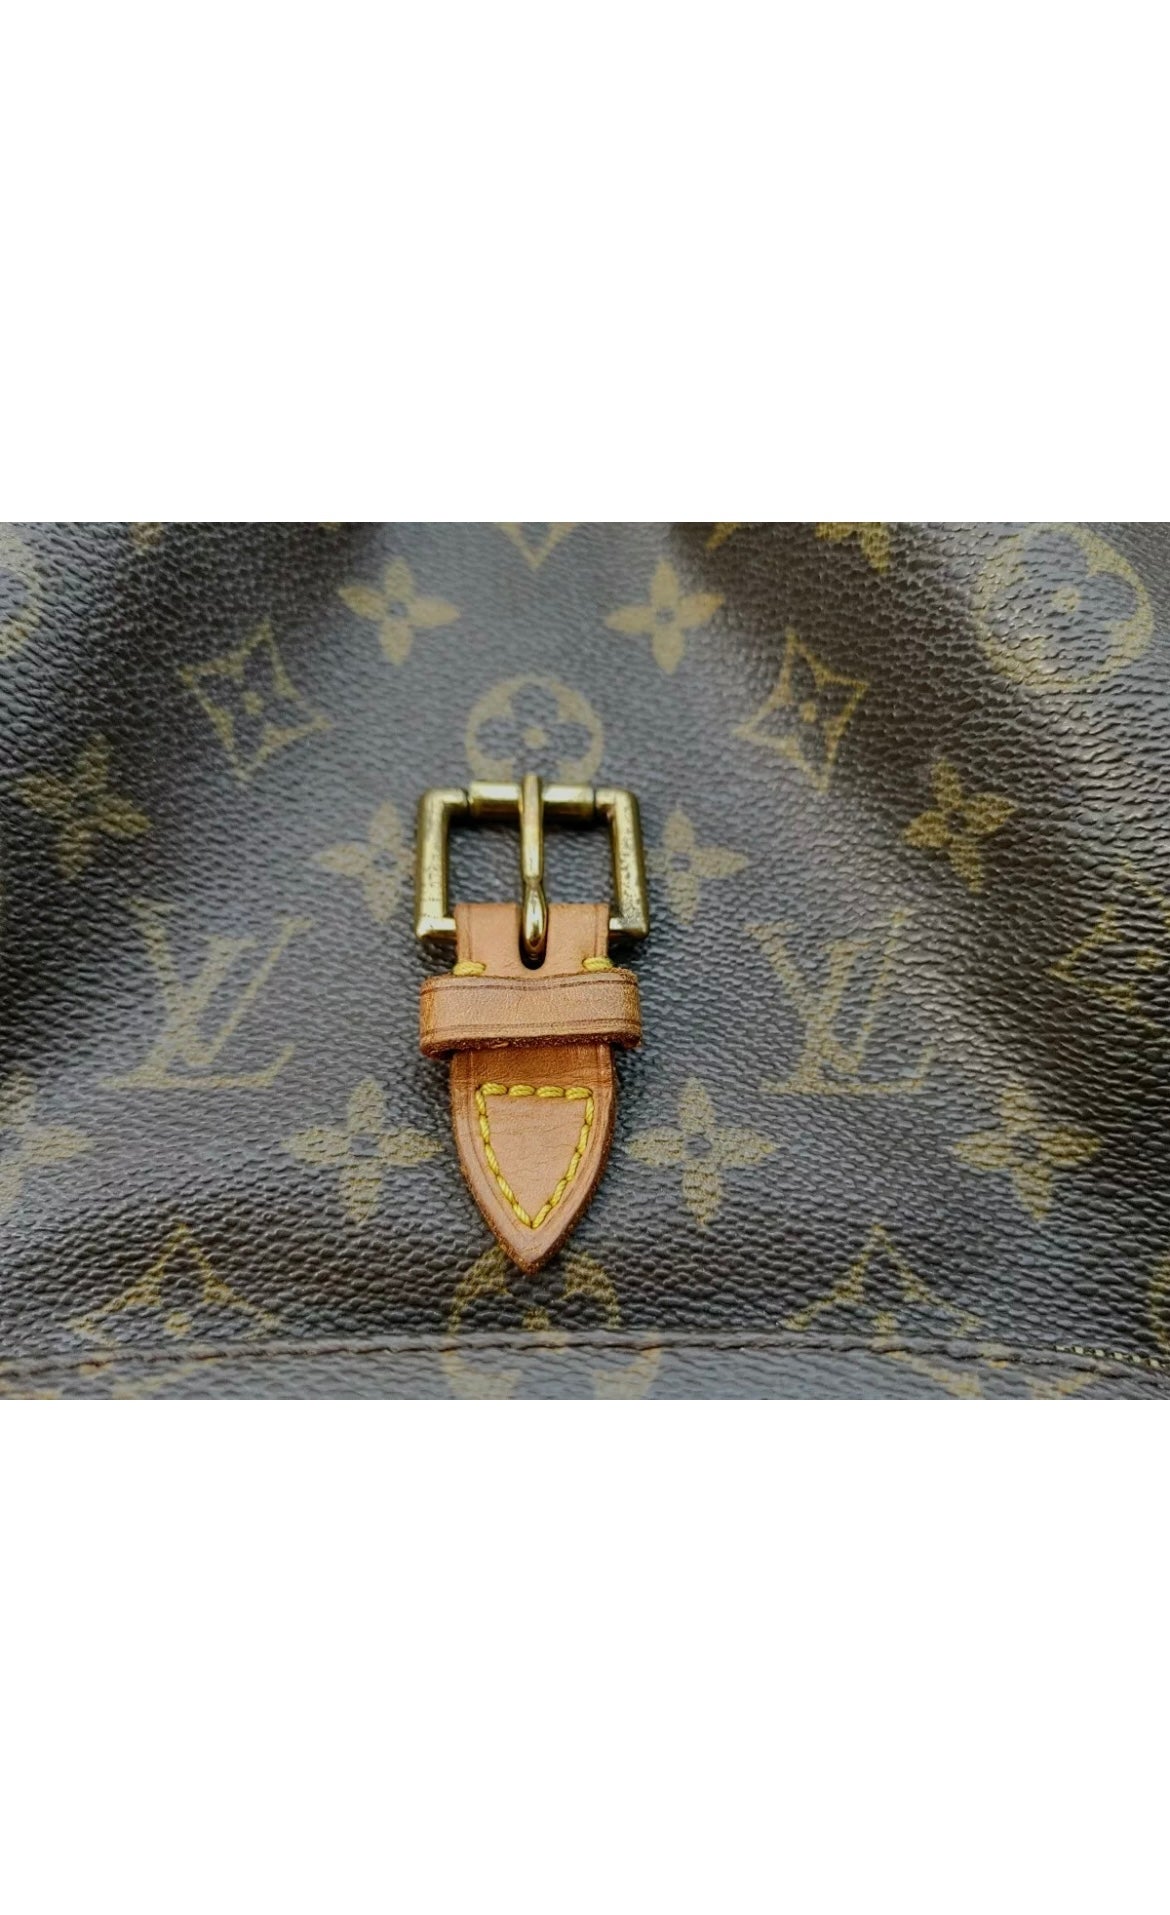 Vintage Louis Vuitton Monogram Montsouris Backpack